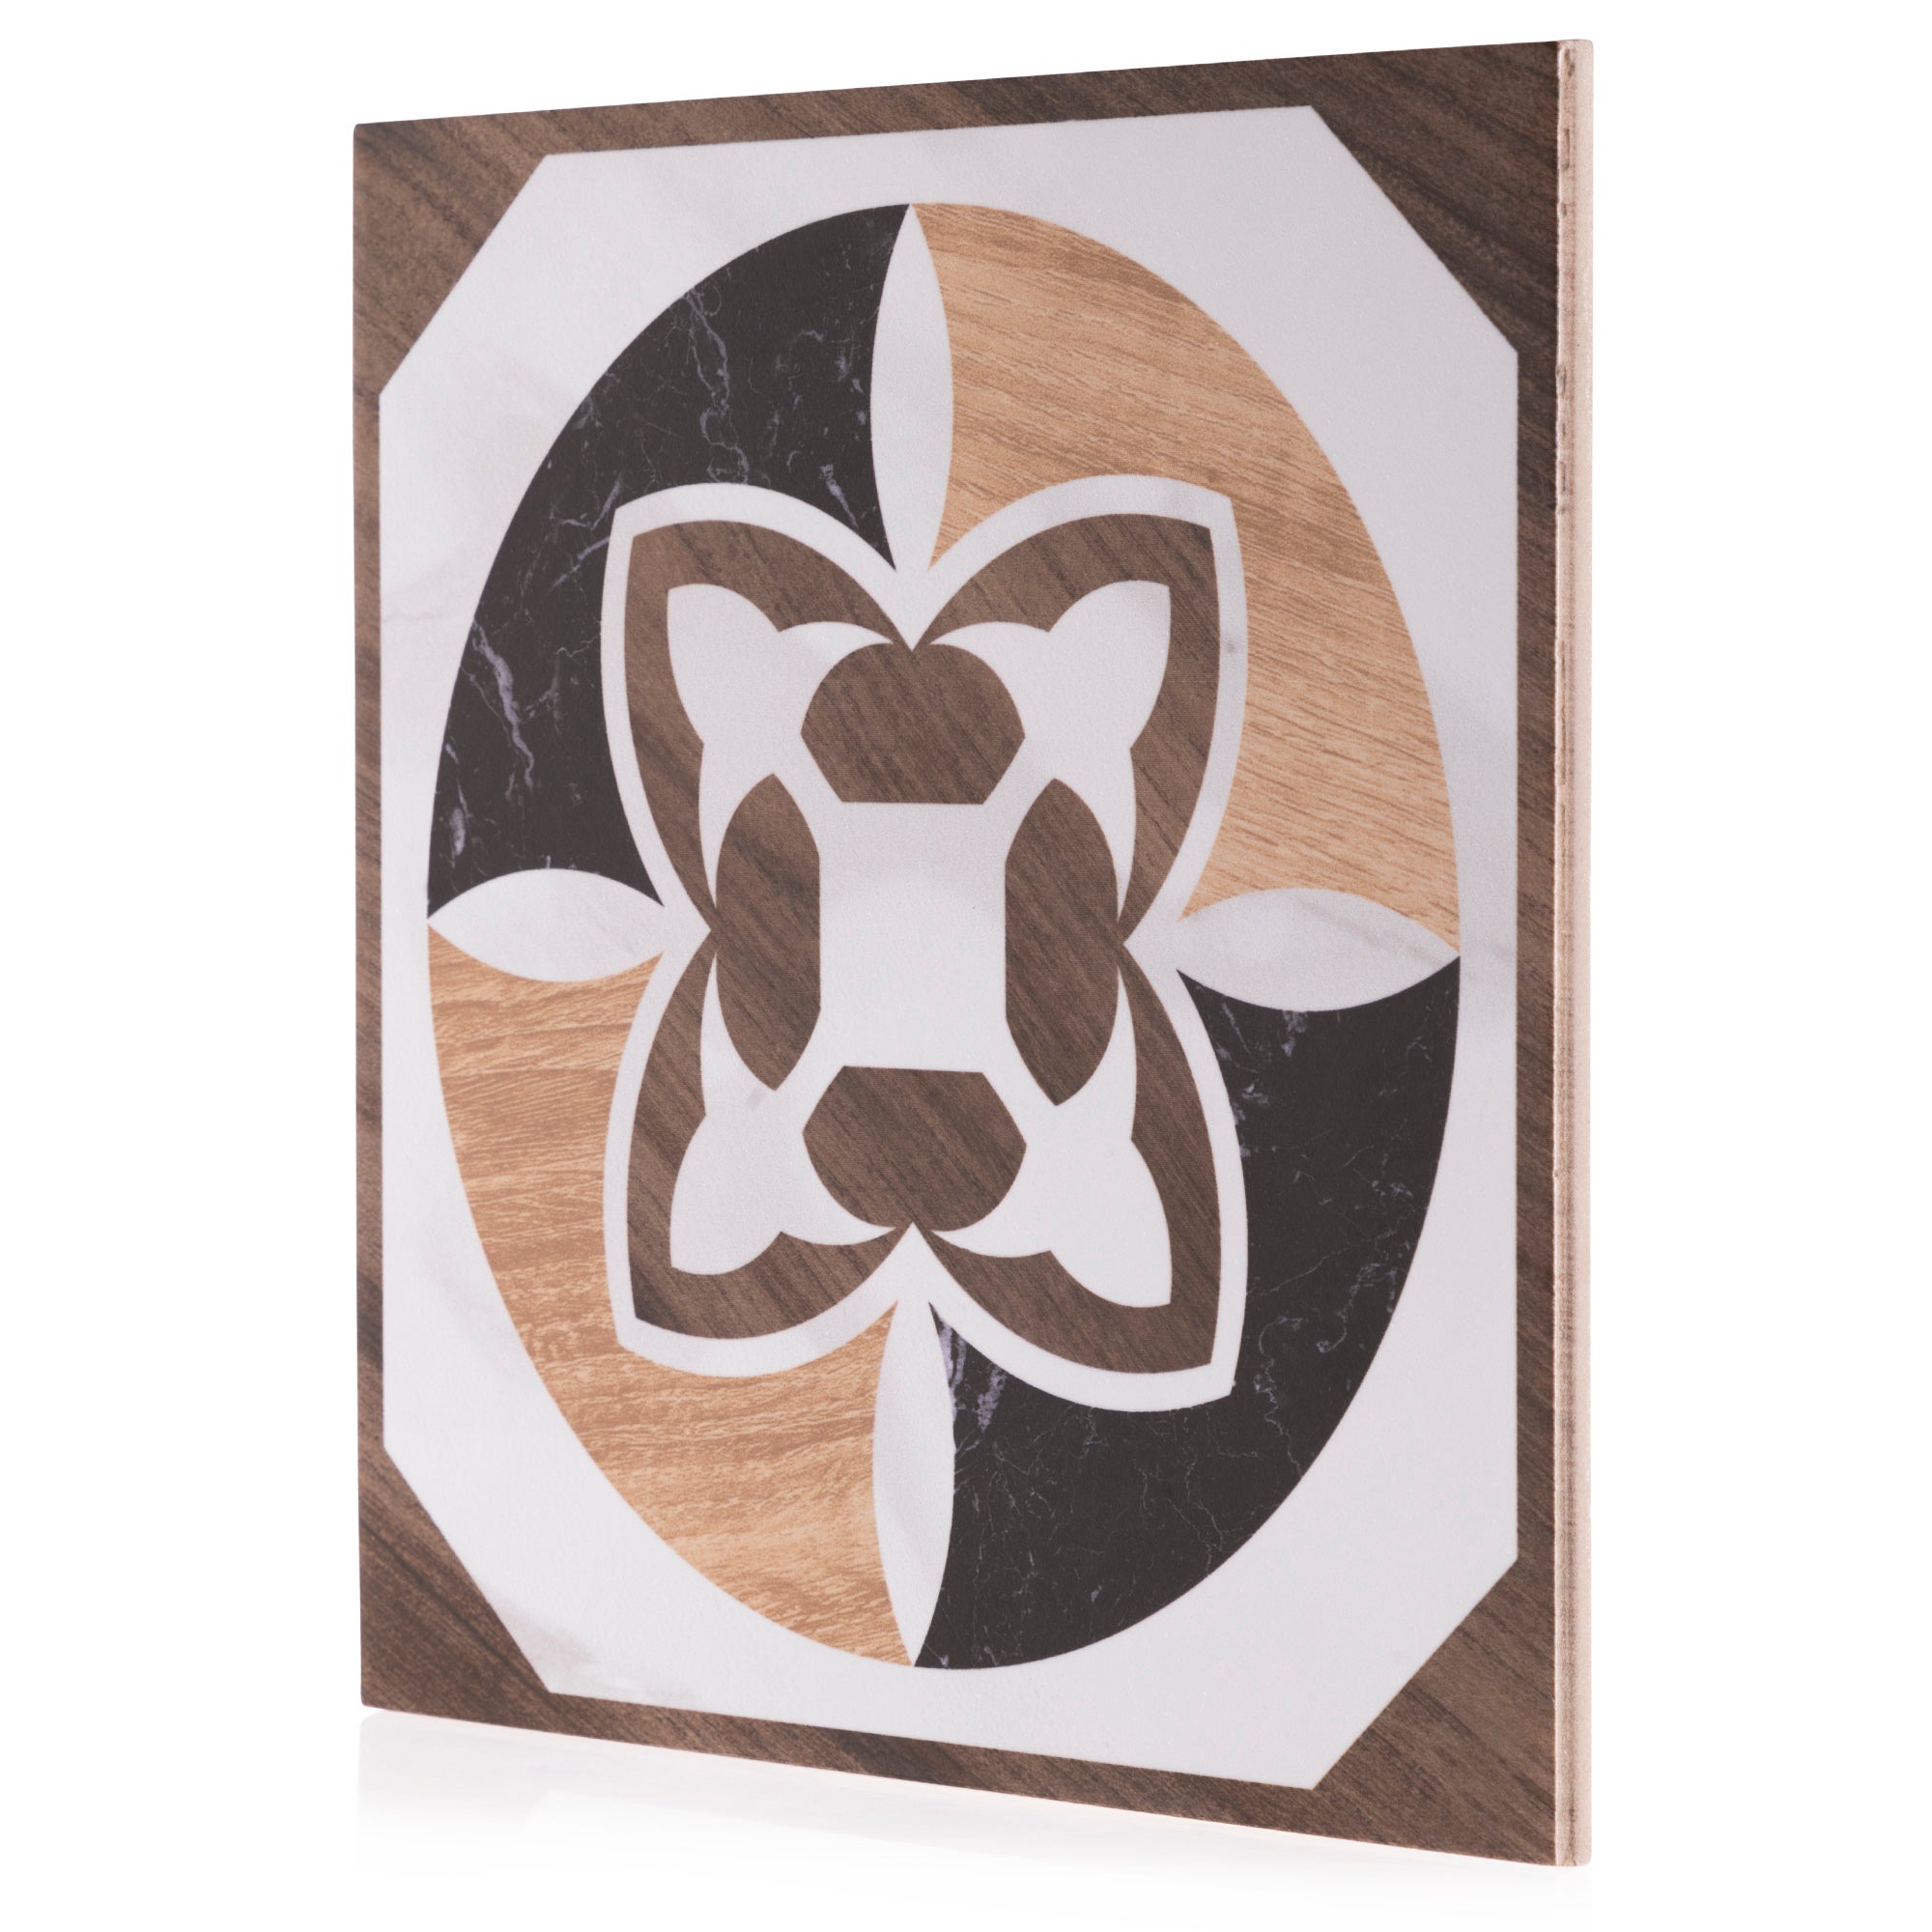 8x8 Art Wood Marble design 1 porcelain tile - Industry Tile